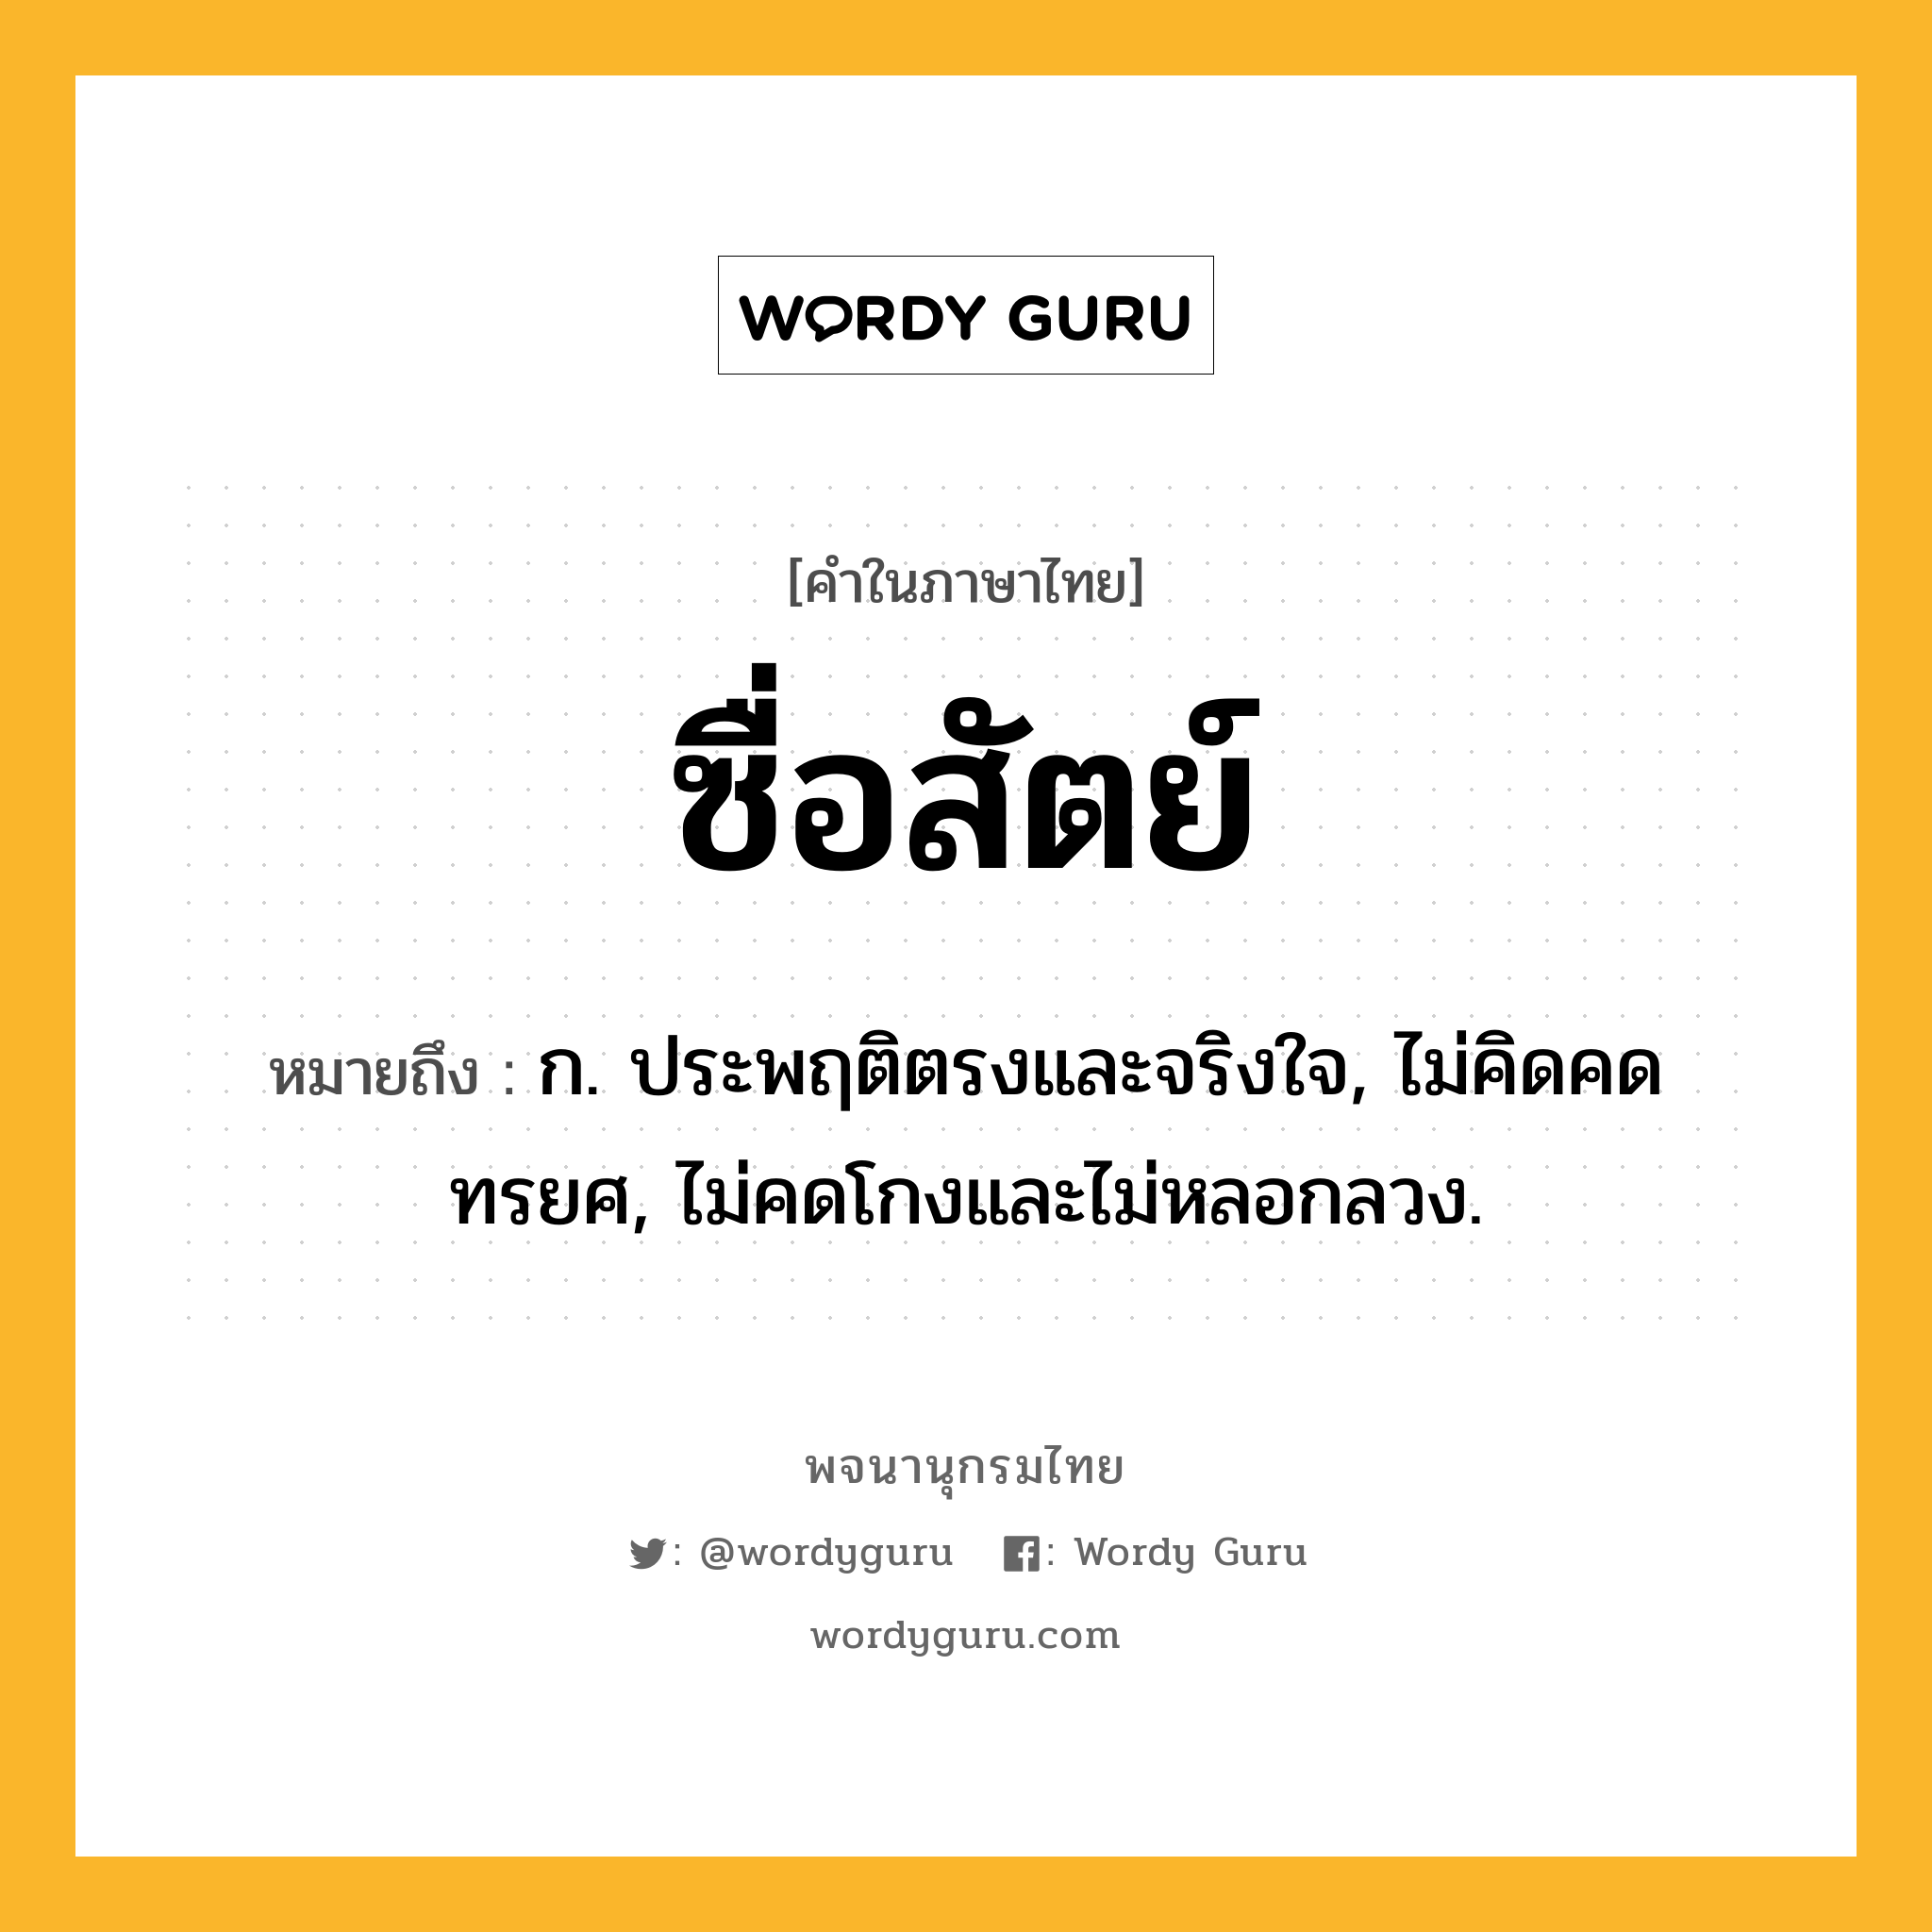 ซื่อสัตย์ ความหมาย หมายถึงอะไร?, คำในภาษาไทย ซื่อสัตย์ หมายถึง ก. ประพฤติตรงและจริงใจ, ไม่คิดคดทรยศ, ไม่คดโกงและไม่หลอกลวง.